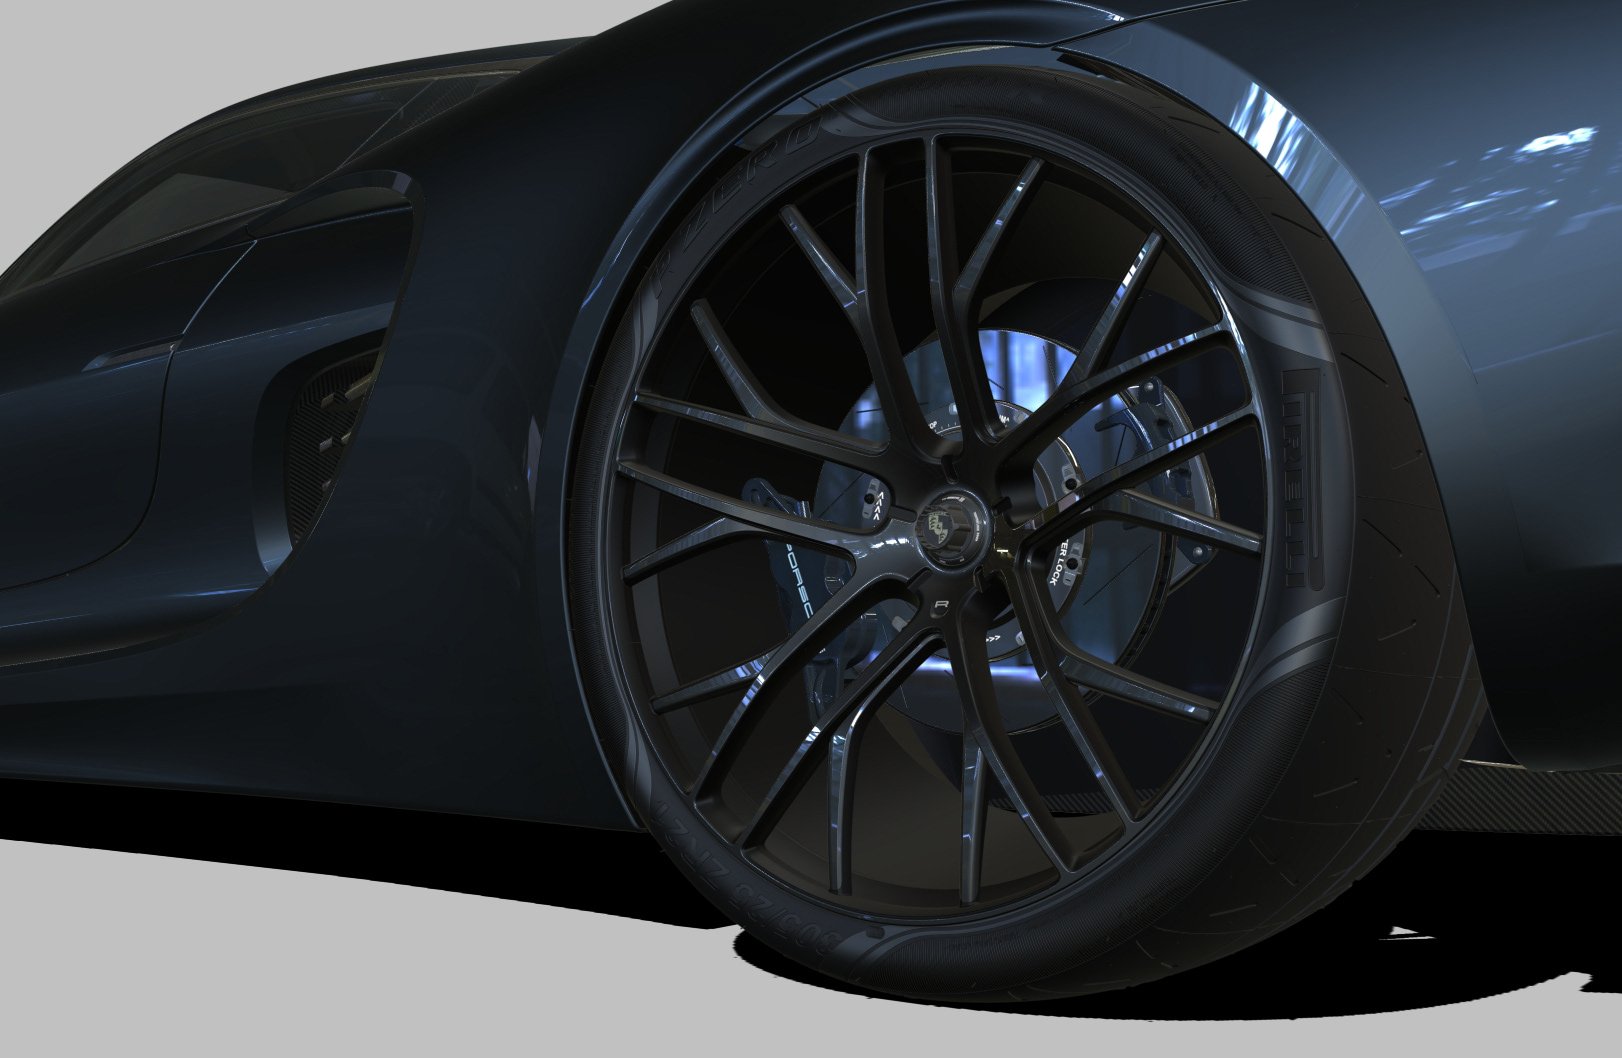 Porsche 988 Vision concepto render